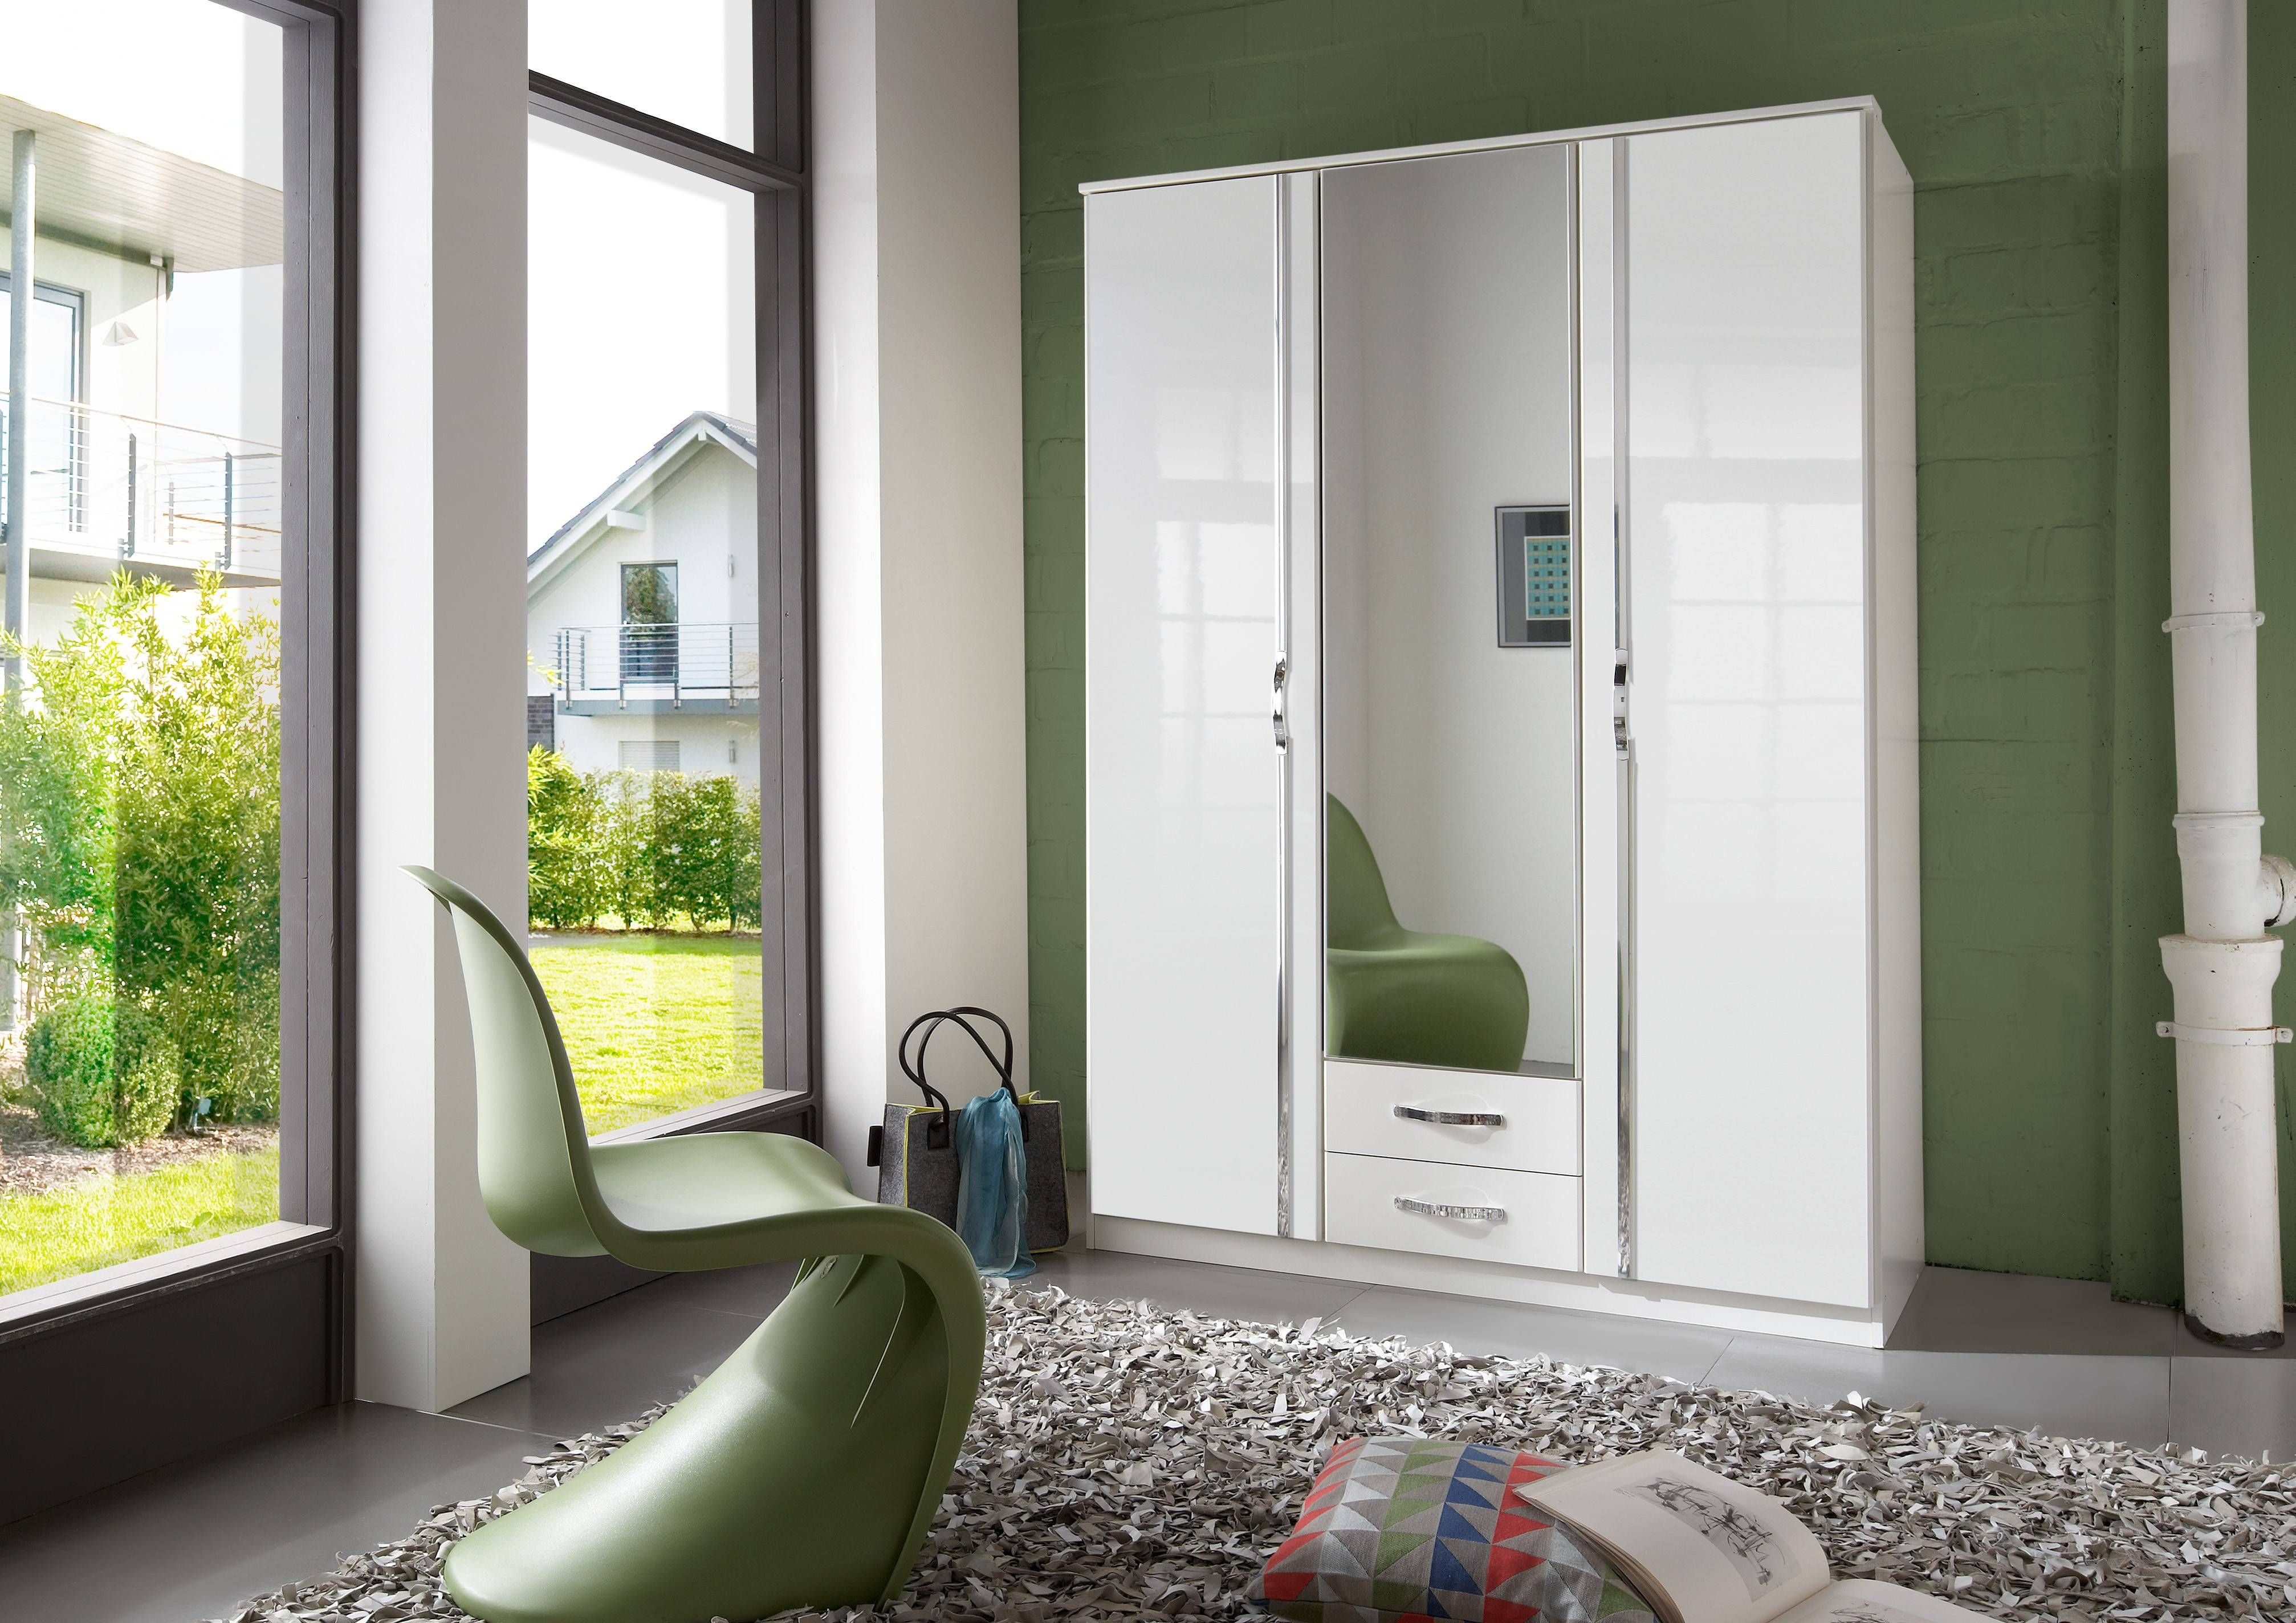 Slumberhaus 'trio' White Gloss, Chrome & Mirror 3 Door 2 Drawer Regarding White 3 Door Mirrored Wardrobes (Photo 4 of 15)